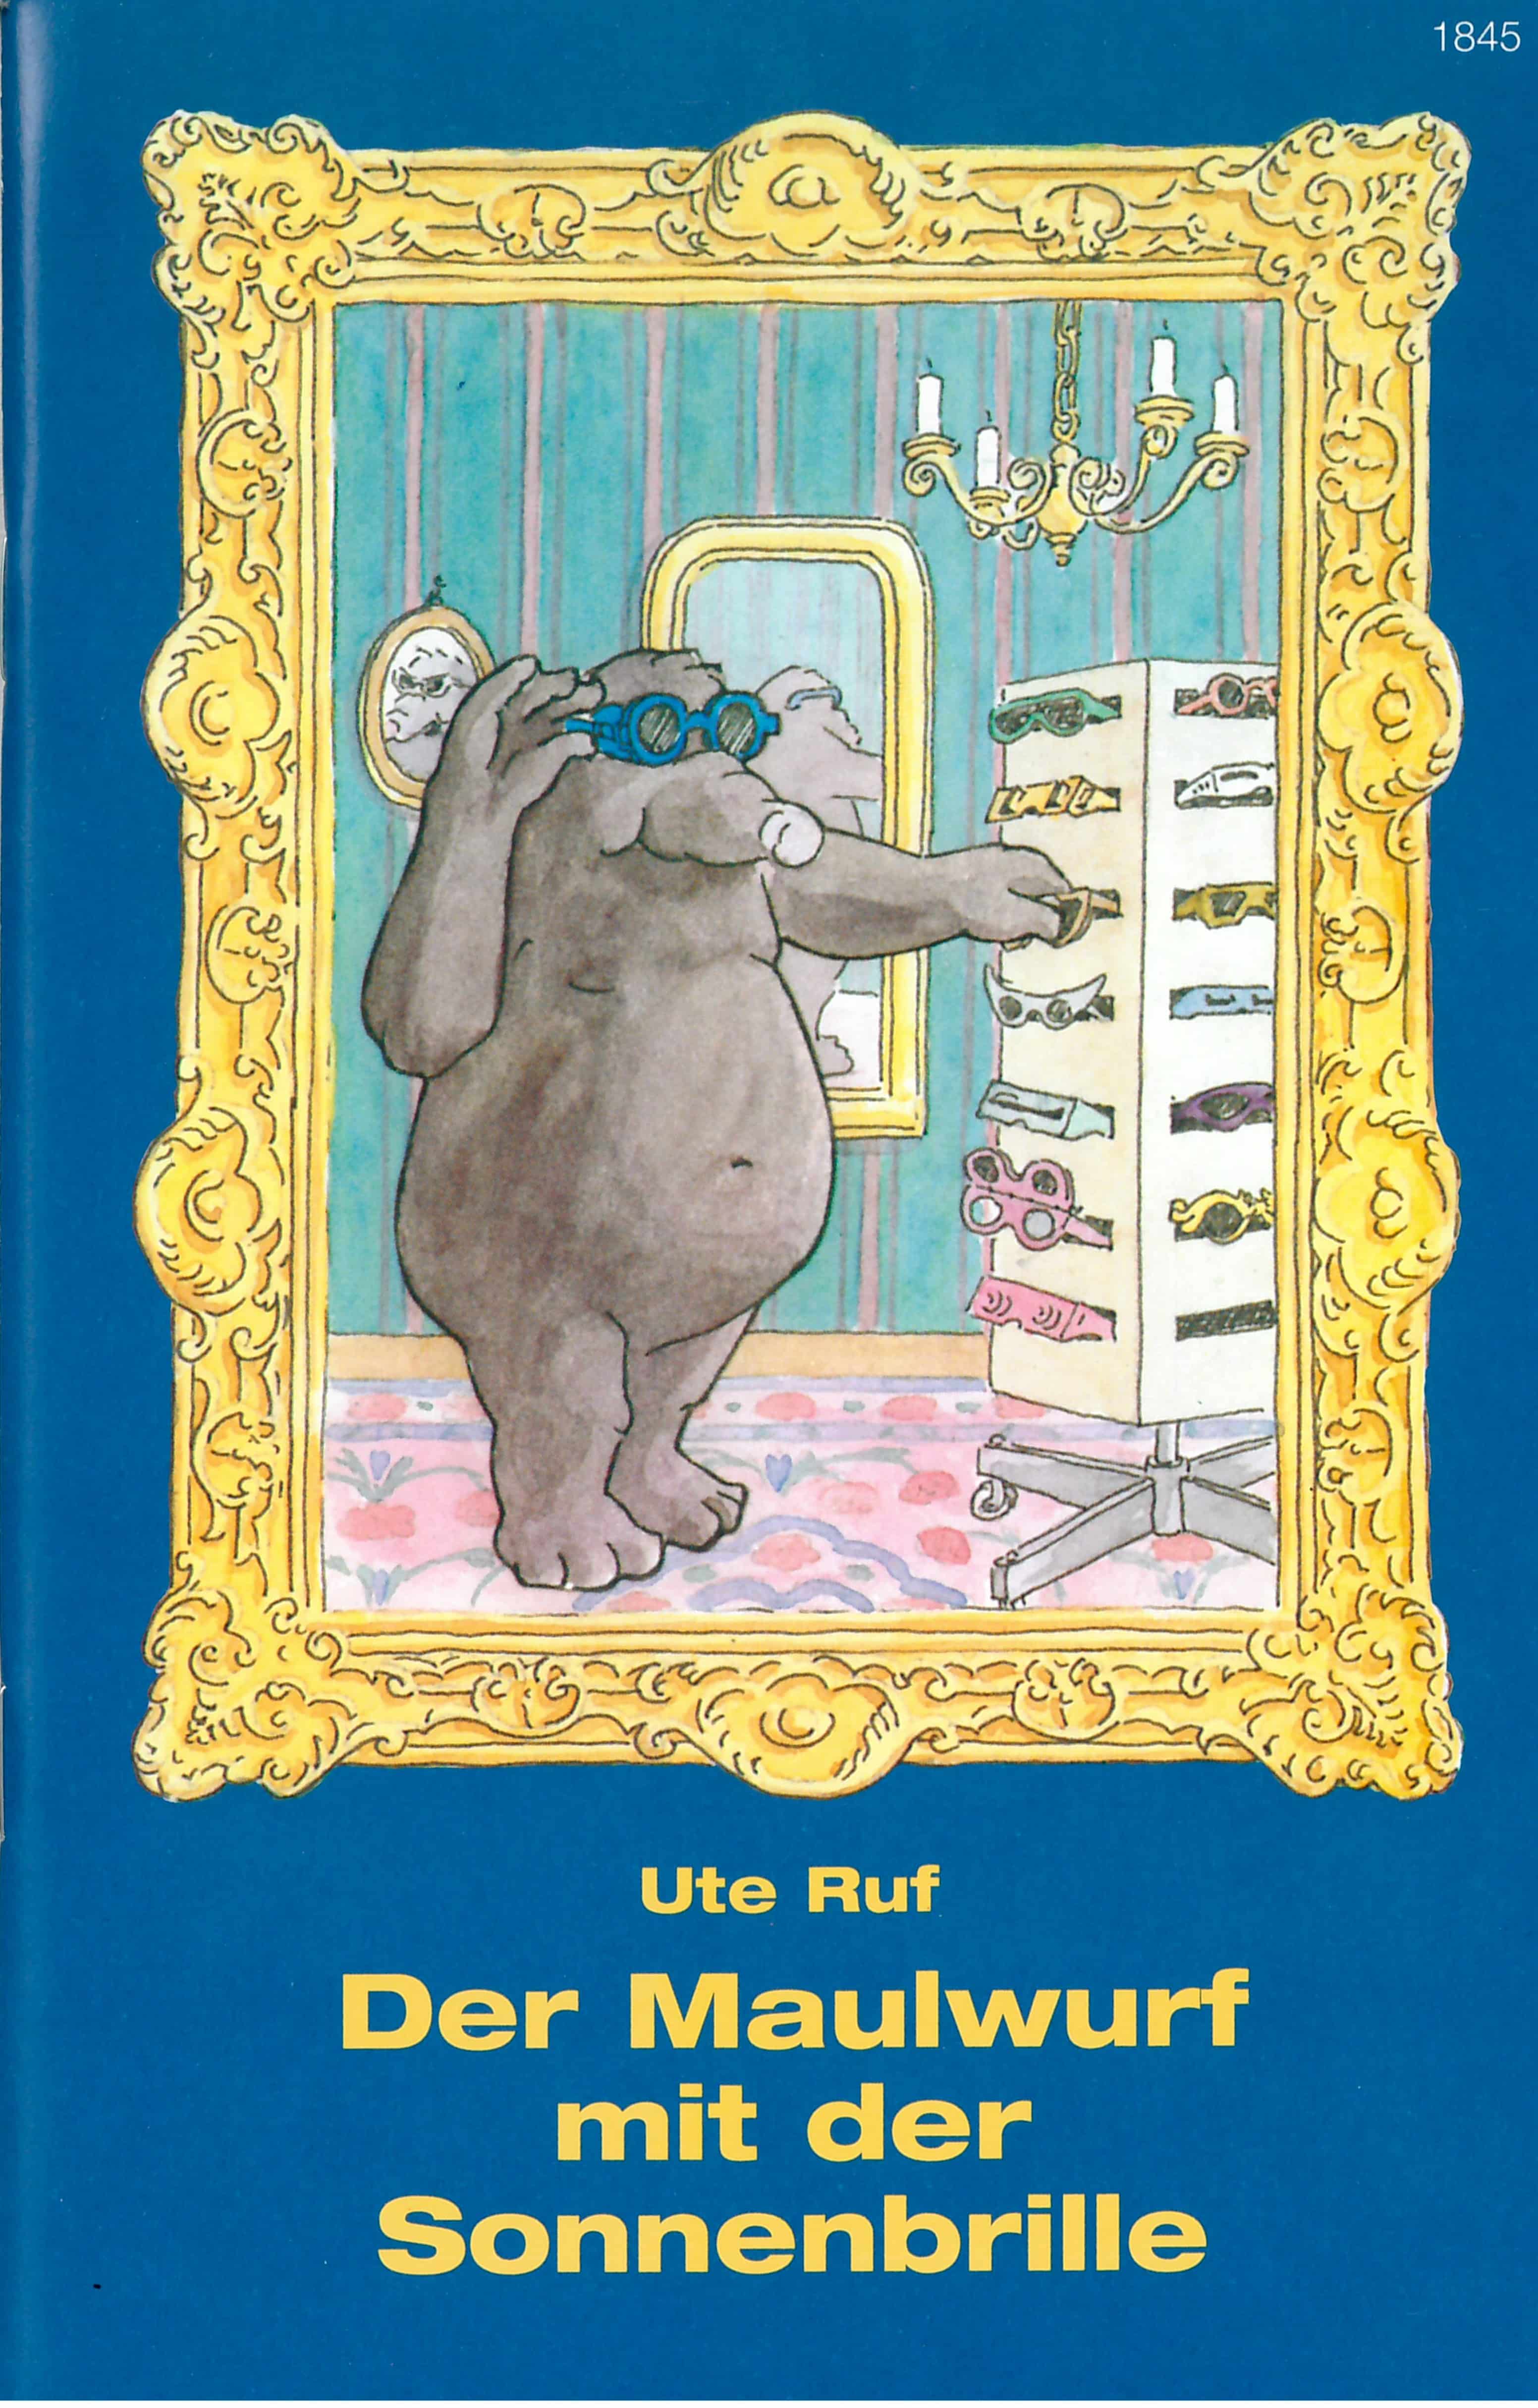 Der Maulwurf mit der Sonnenbrille, ein Kinderbuch von Ute Ruf, Illustration von Hans-Juerg Studer, SJW Verlag, Malen & basteln